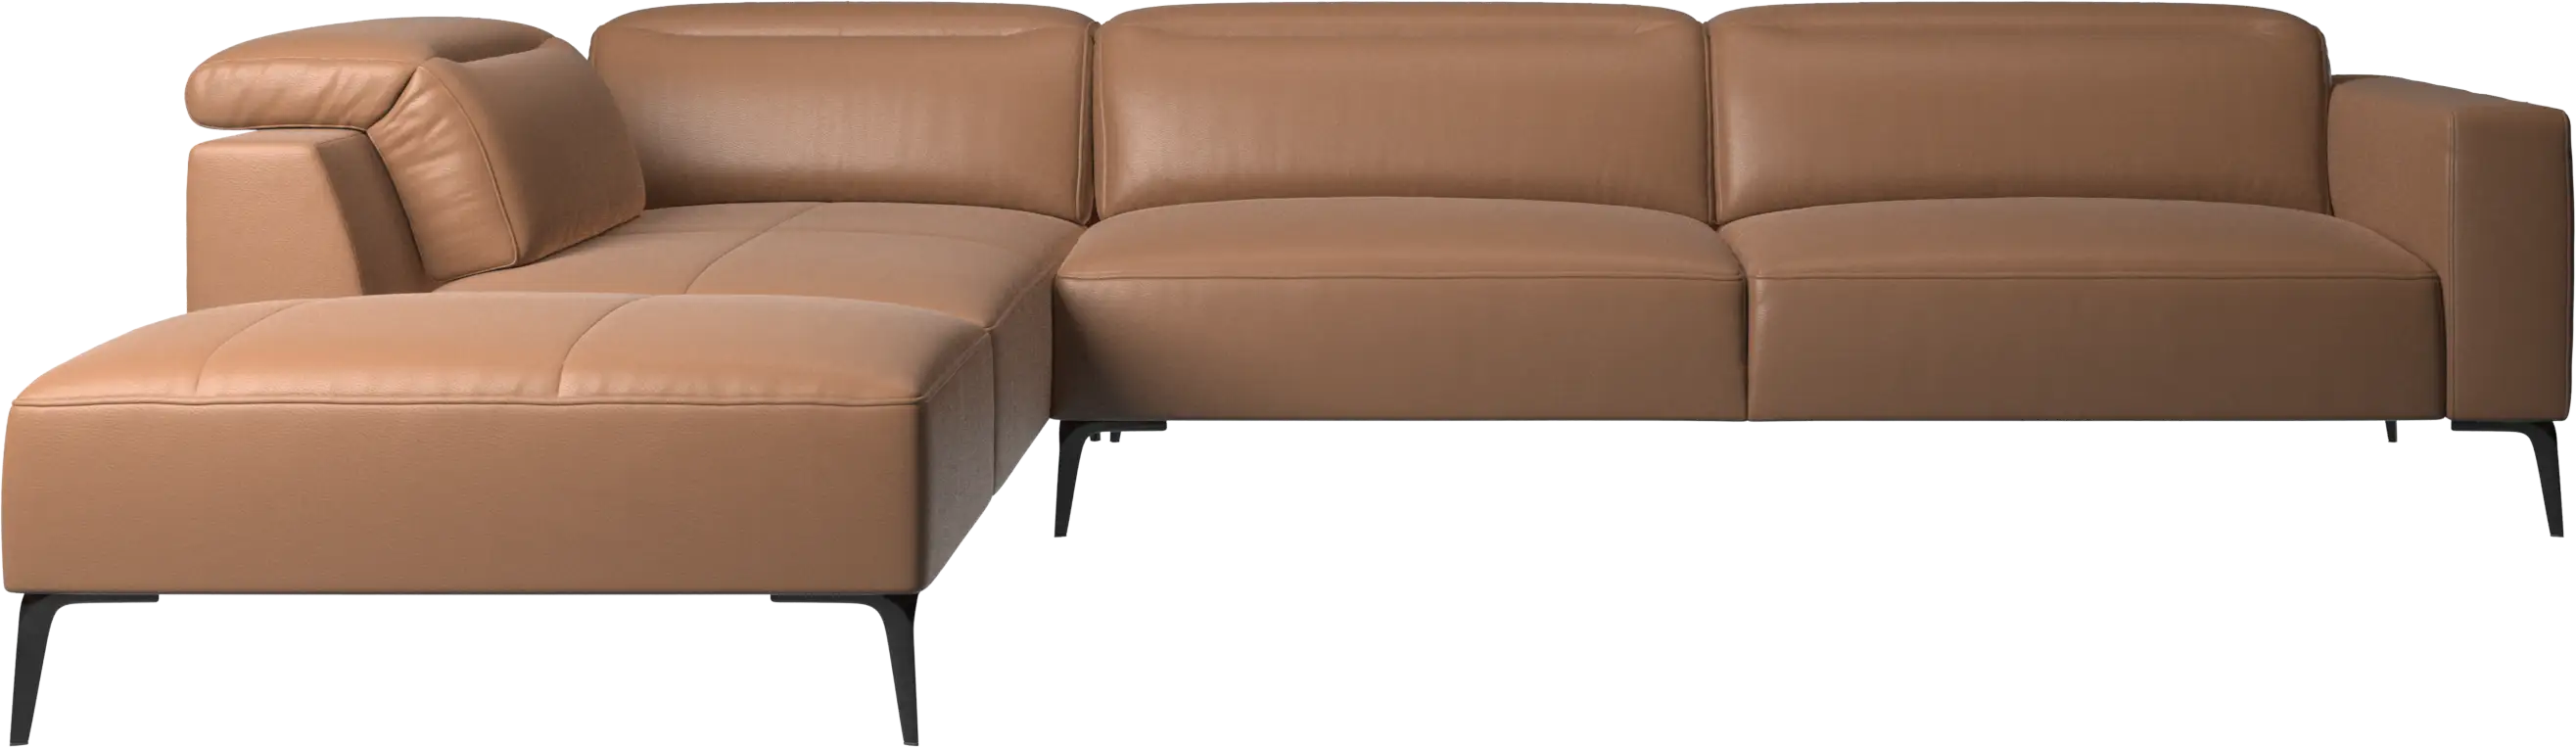 Угловой диван Zürich с лаунж модулем